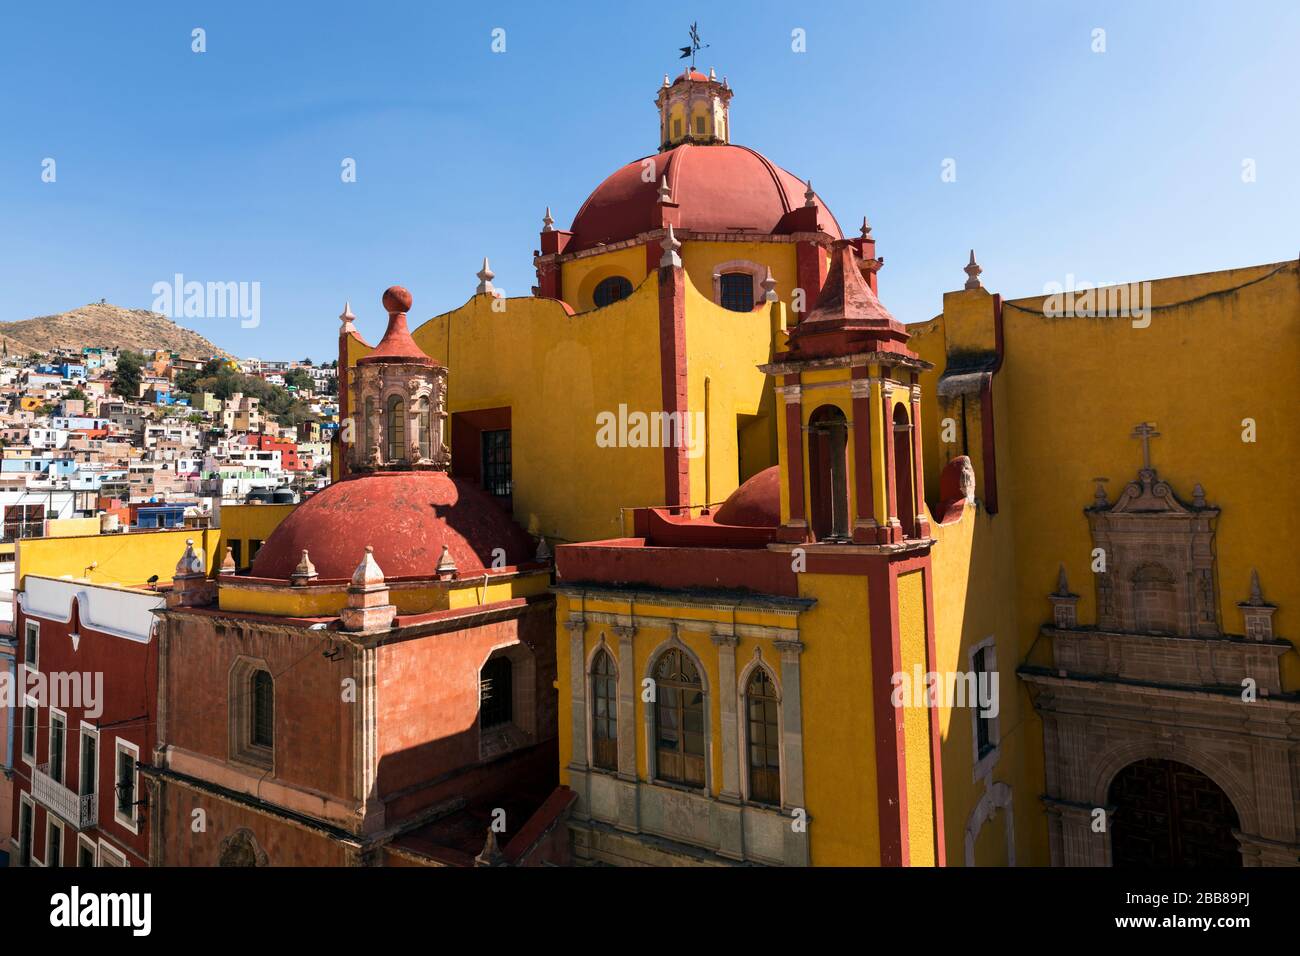 Mexico, Guanajuato,The Basïlica de Nuestra Seńora de Guanjuato, the main church in the city. Spanish Colonial architecture. Stock Photo